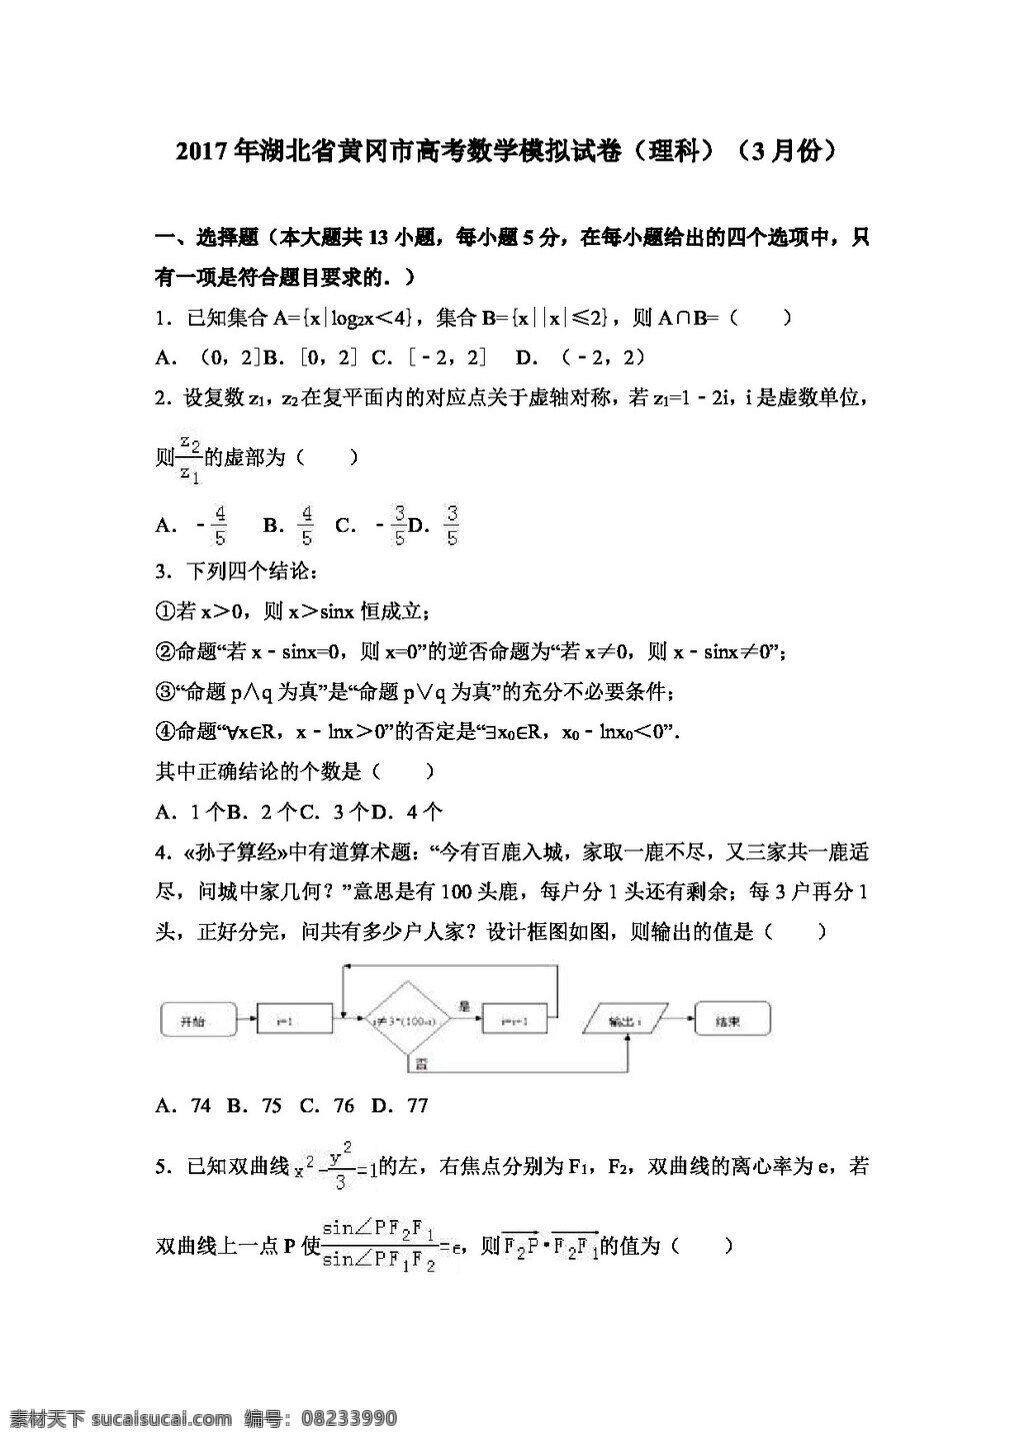 数学 人教 版 2017 年 湖北省 黄冈市 高考 模拟试卷 理科 月份 高考专区 人教版 试卷